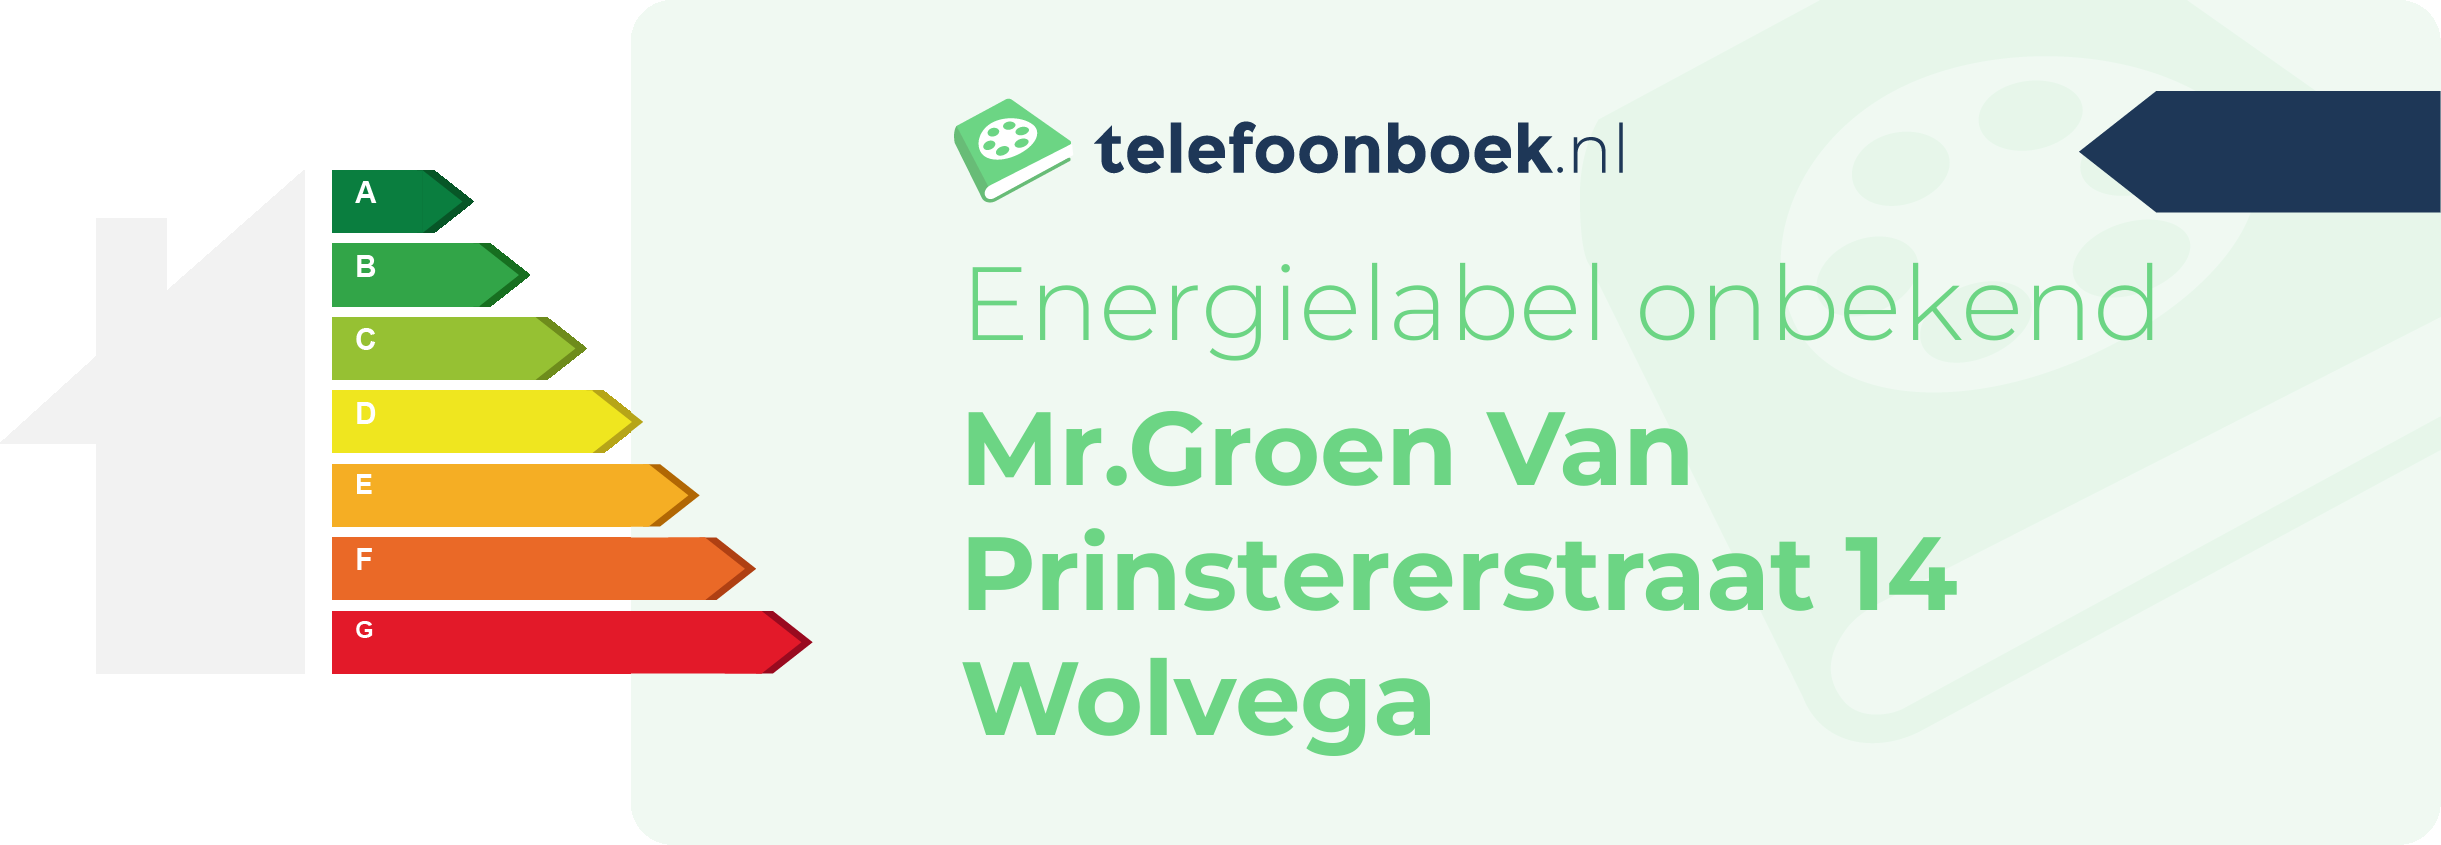 Energielabel Mr.Groen Van Prinstererstraat 14 Wolvega